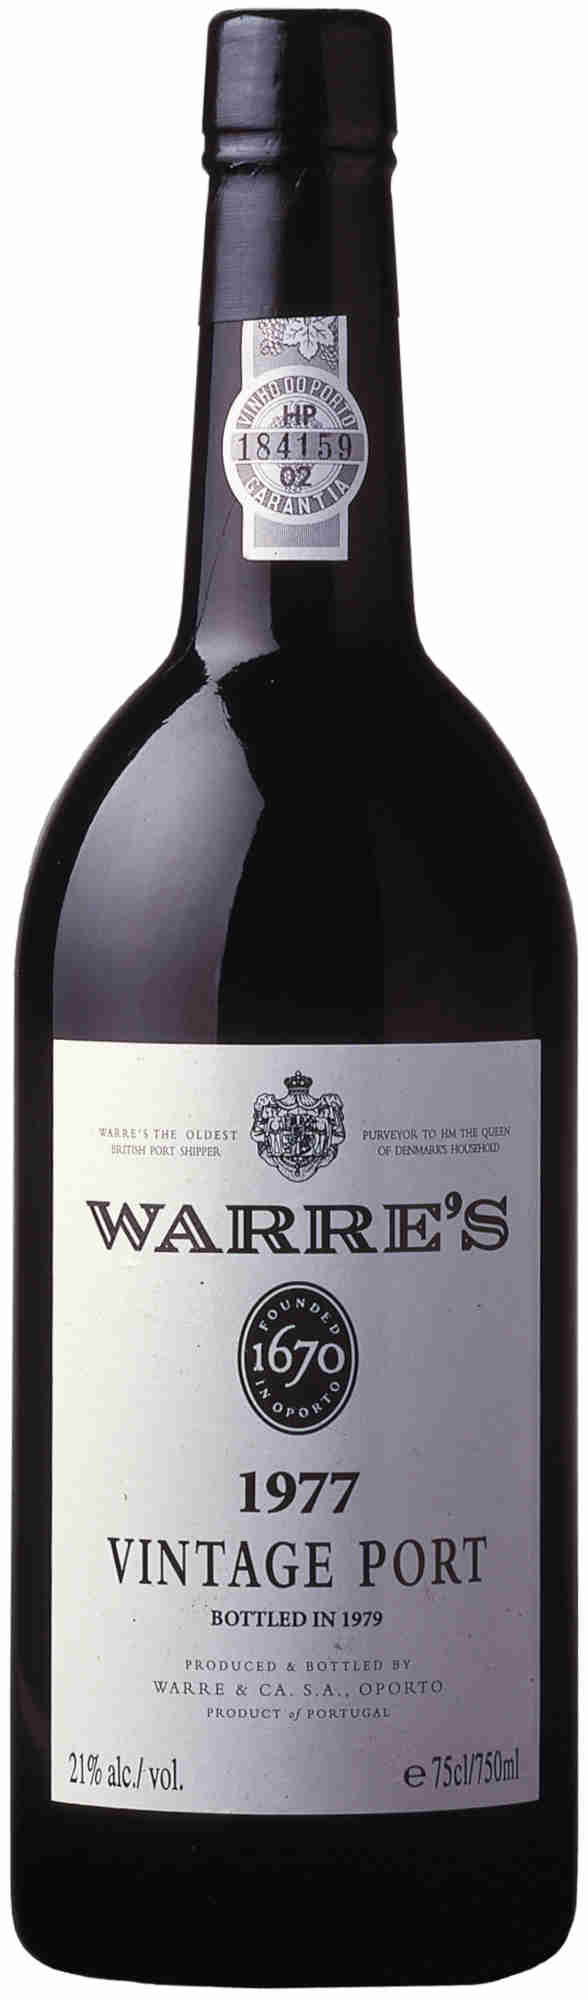 Warres-Vintage-Port-1977